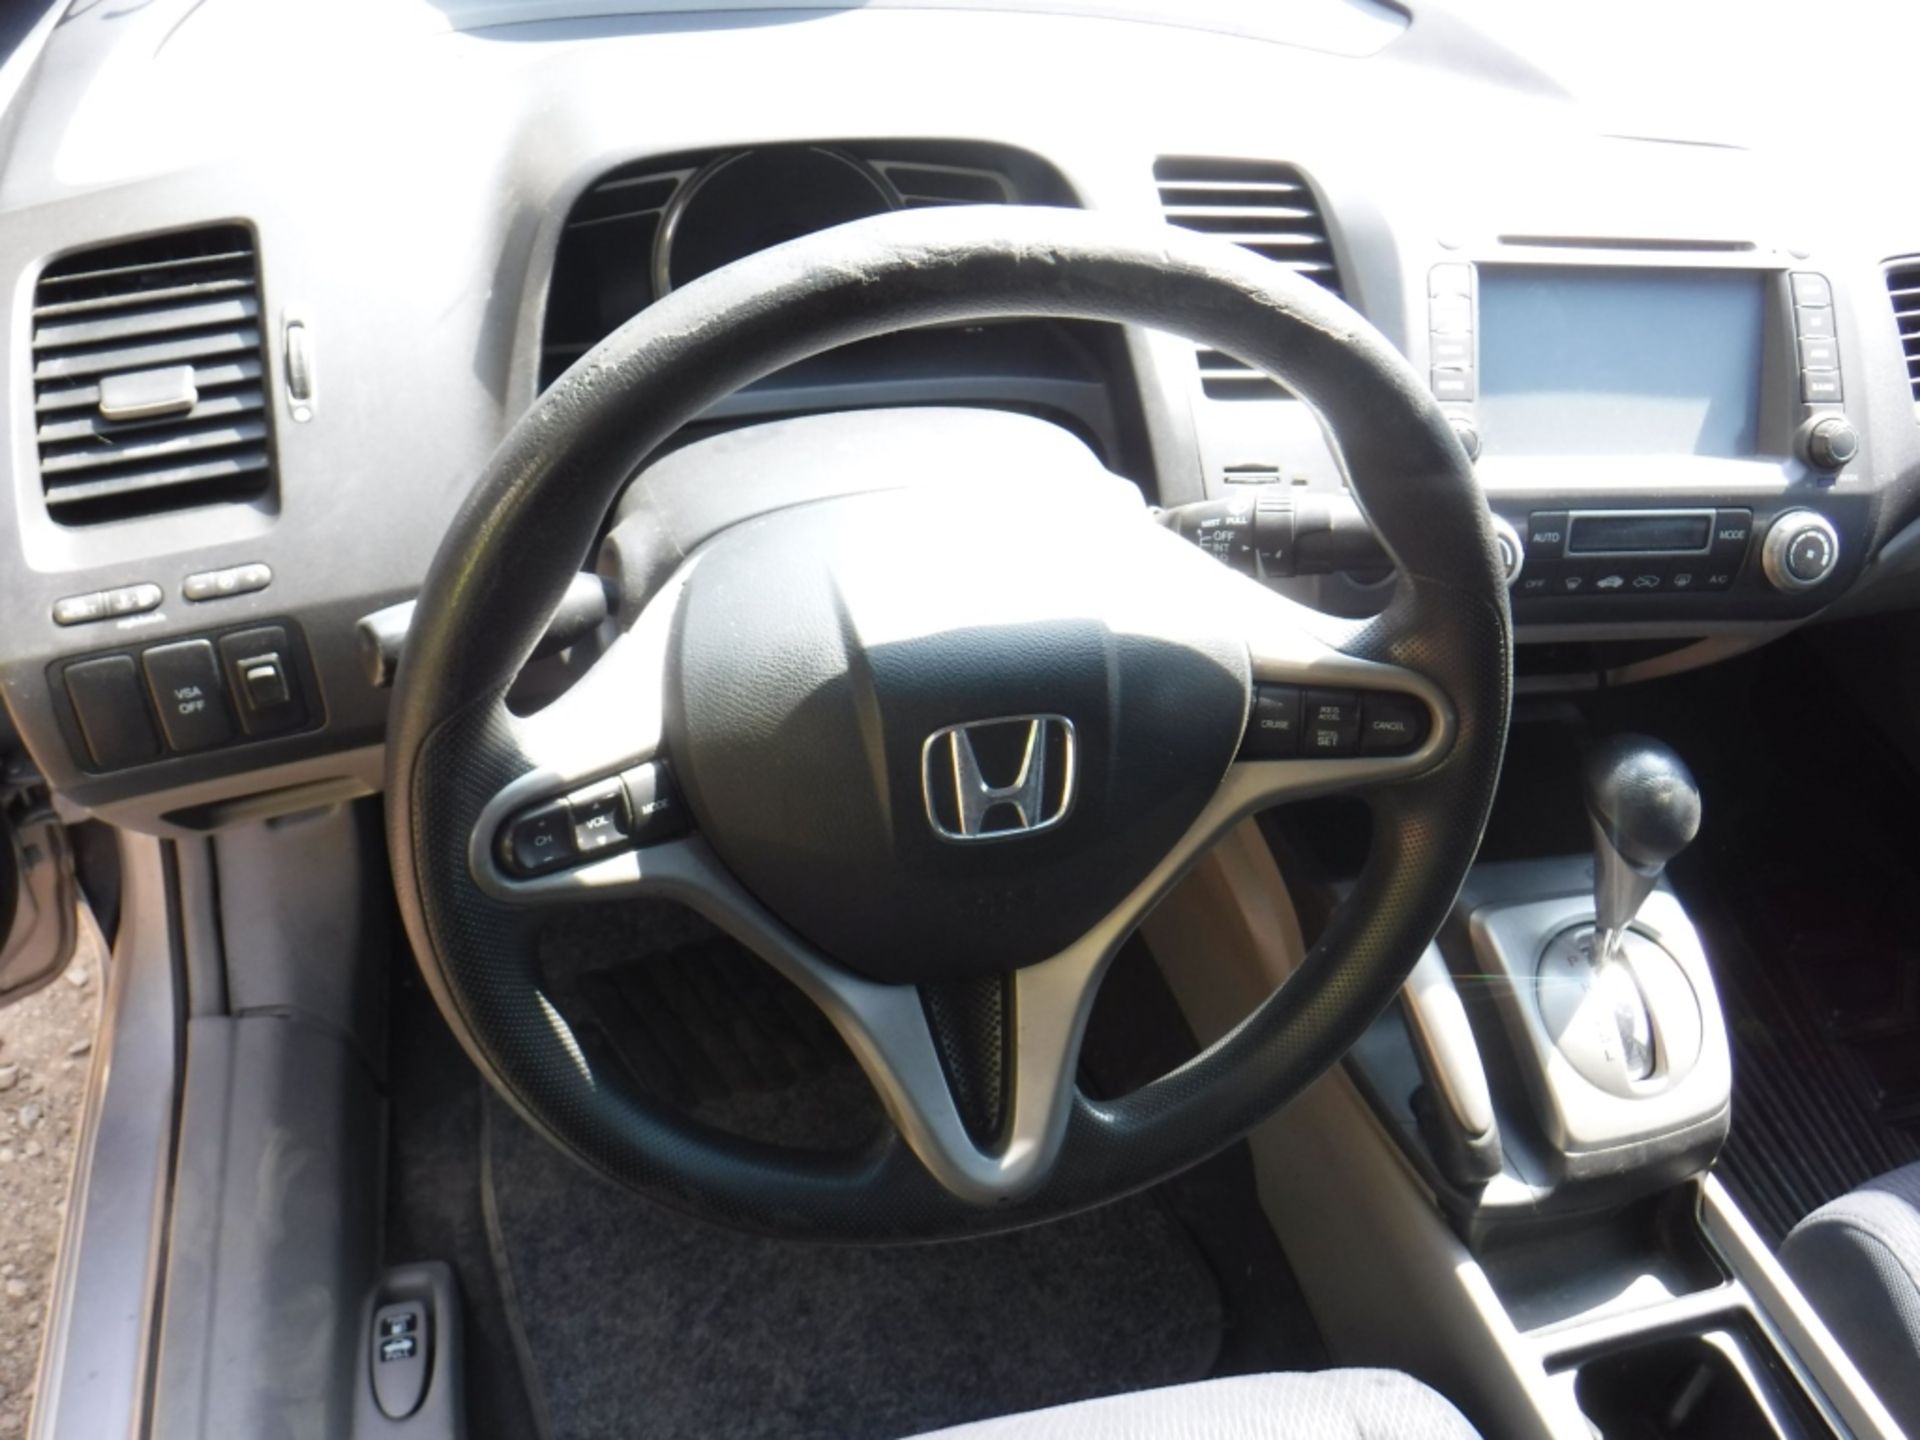 Honda Civic Hybrid Sedan, - Image 9 of 15